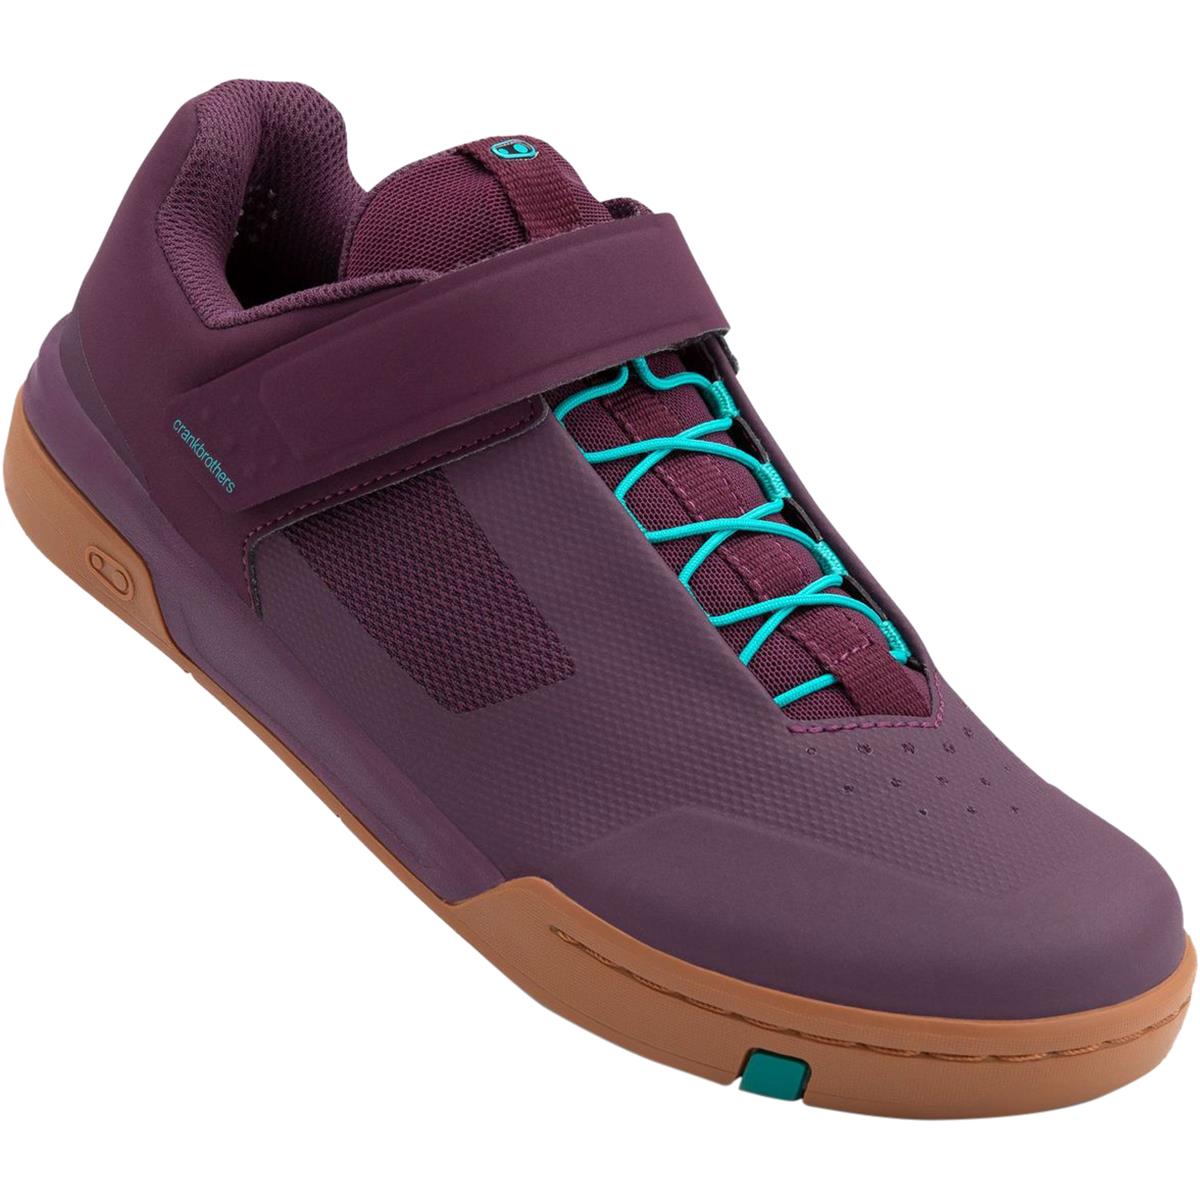 Crankbrothers Chaussures VTT Stamp Speedlace Purple Haze/Teal Blue/Gum